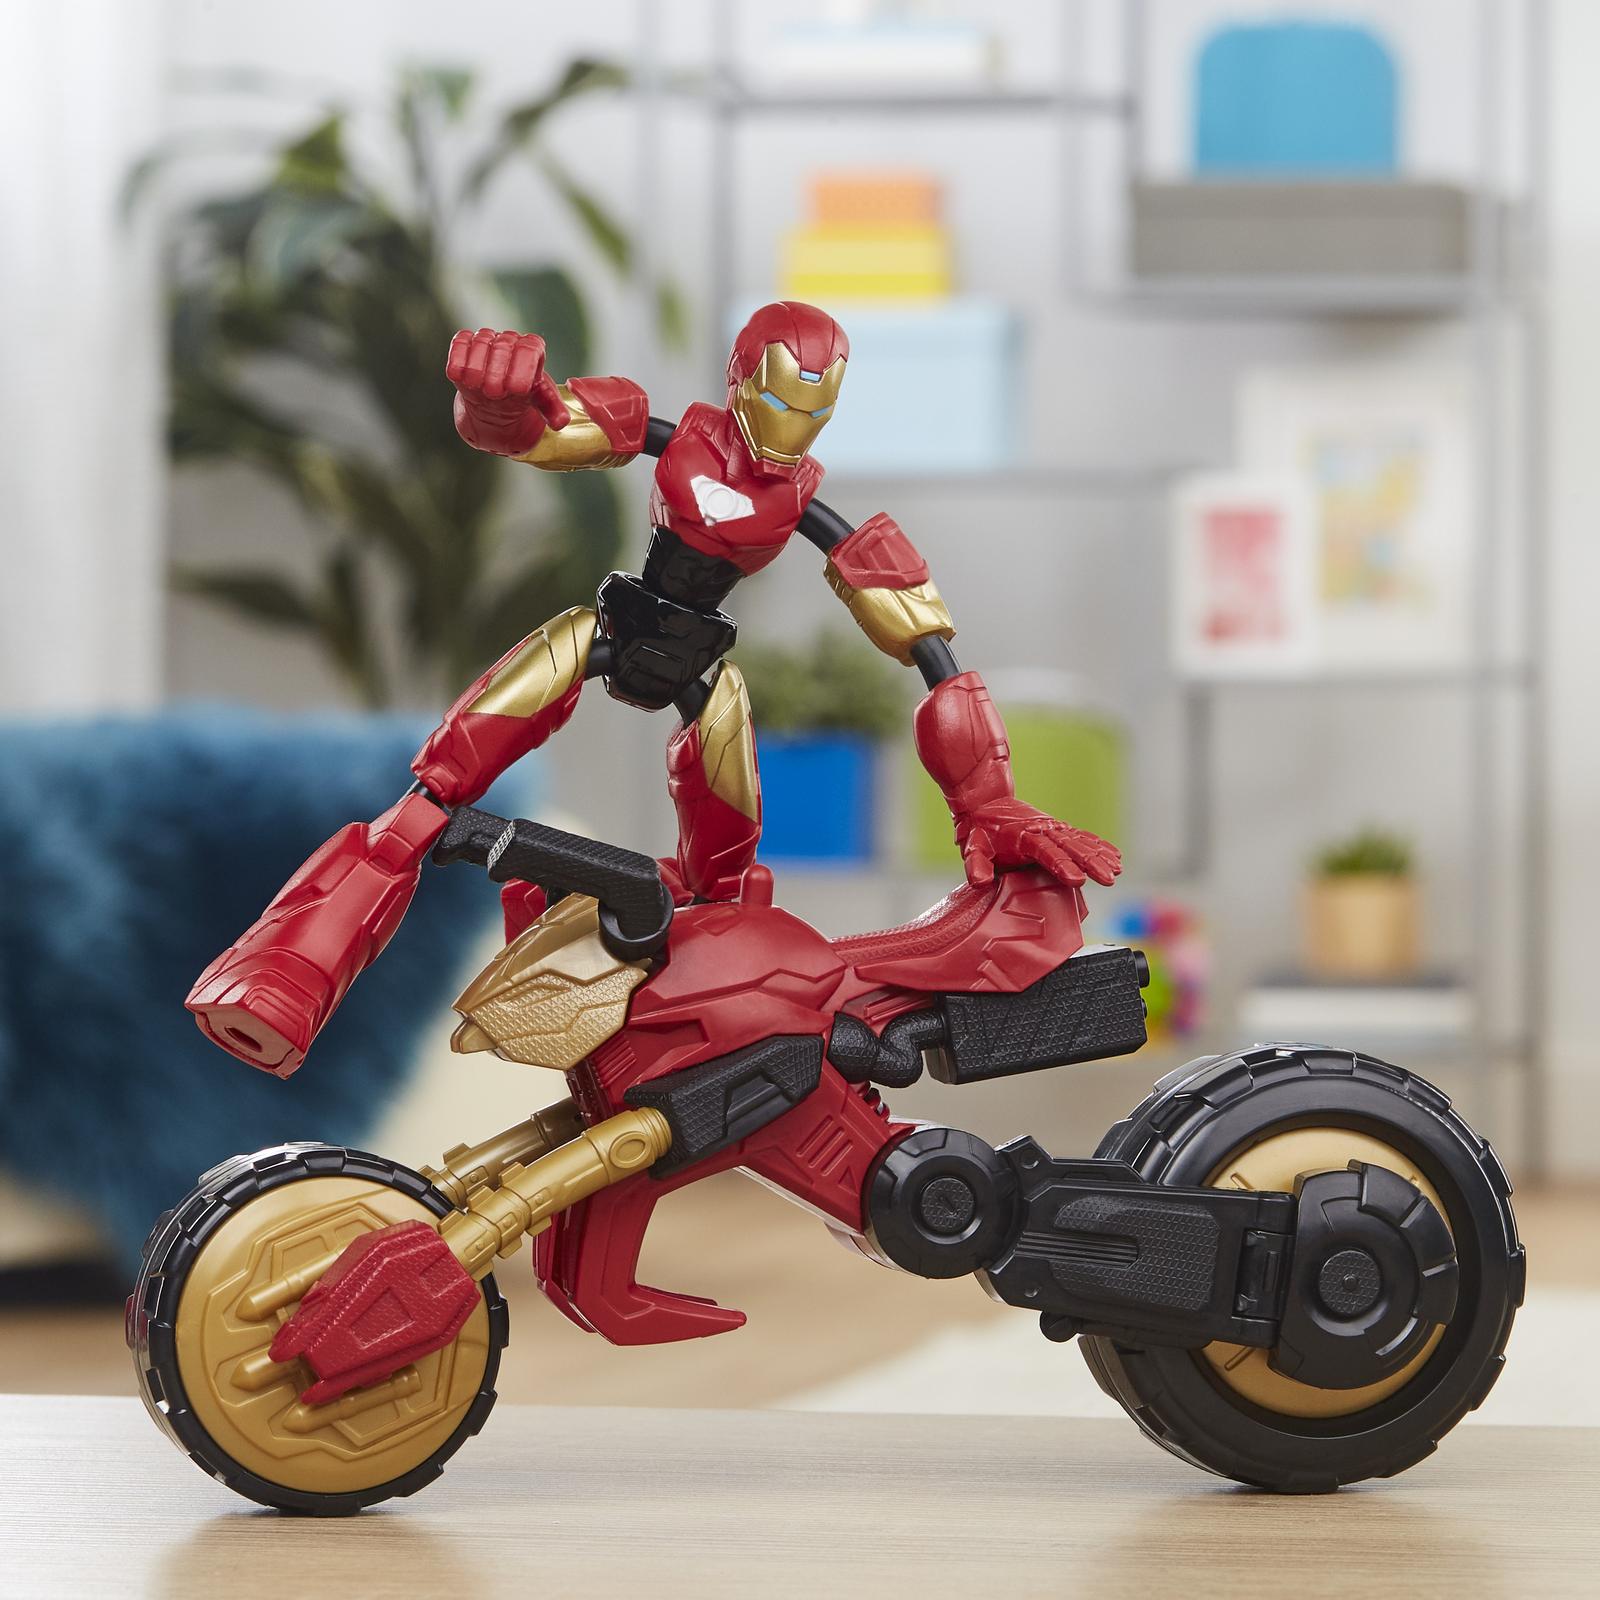 Набор игровой Hasbro (Marvel) Бенди Железный человек на мотоцикле F02445L0 - фото 12